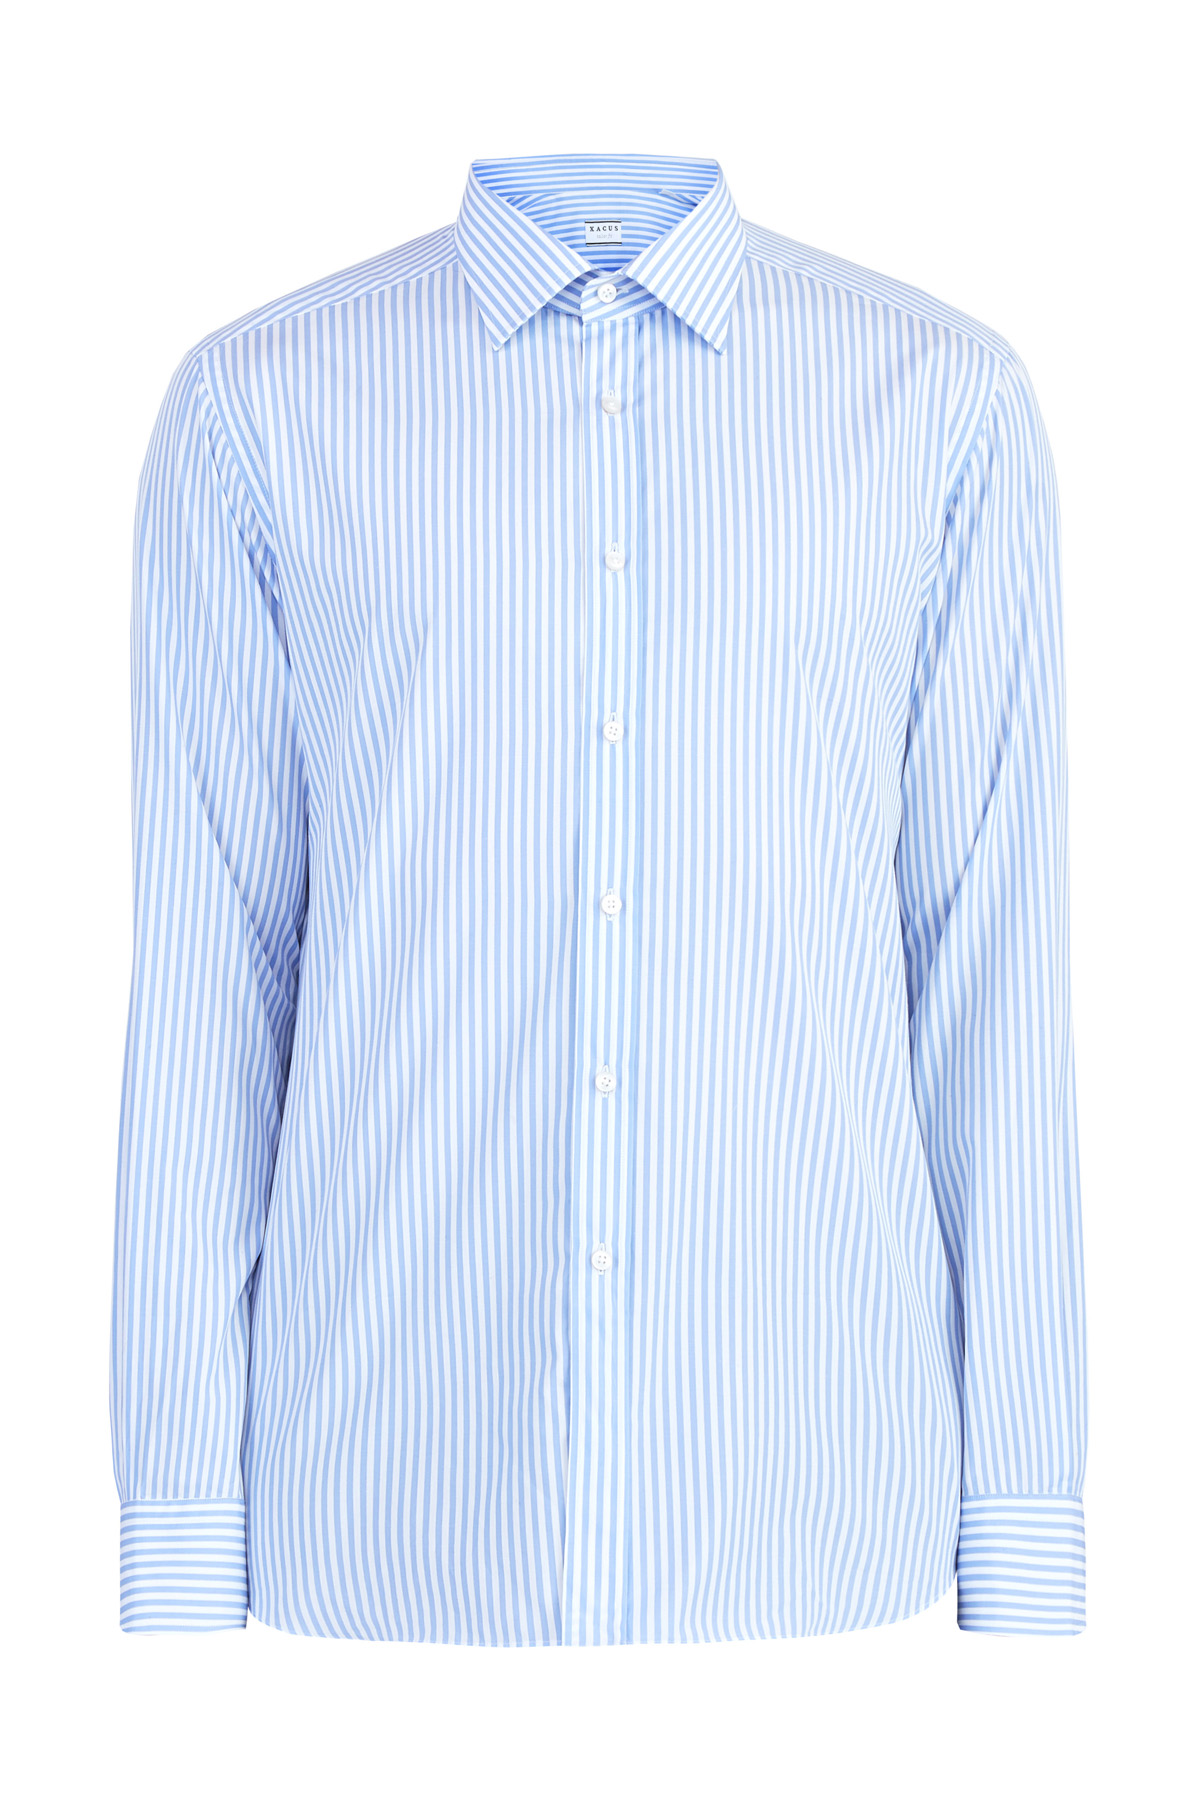 Приталенная рубашка из хлопкового поплина с кручением нити 100/2 XACUS, цвет голубой, размер 48;50;52;52 Приталенная рубашка из хлопкового поплина с кручением нити 100/2 - фото 1